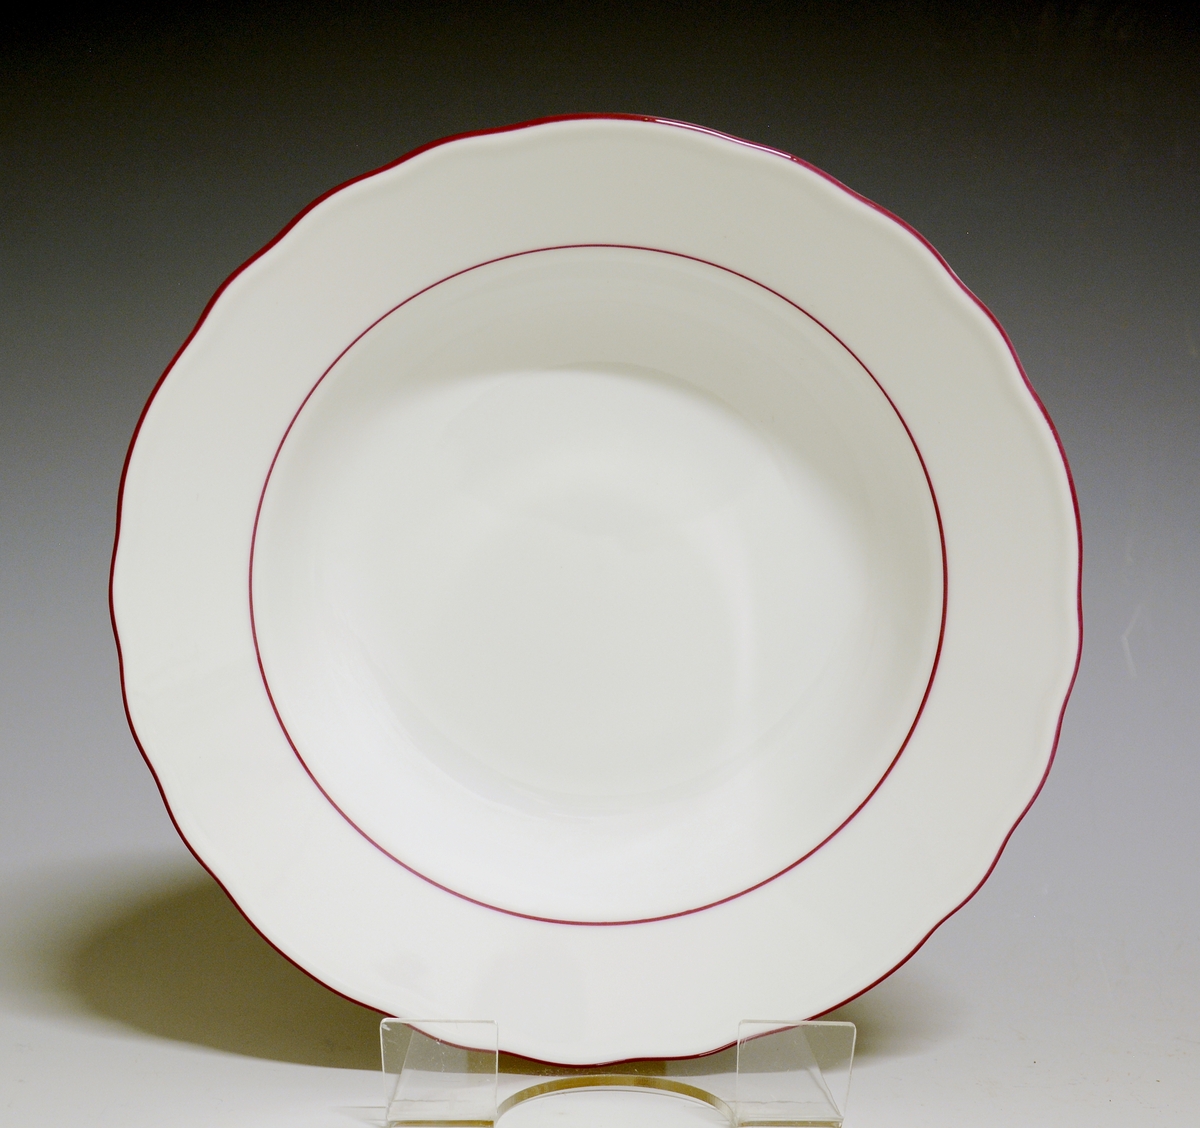 Dyp tallerken av porselen med hvit glasur og rosa kantstriper.
Modell: 1800, Victoria
